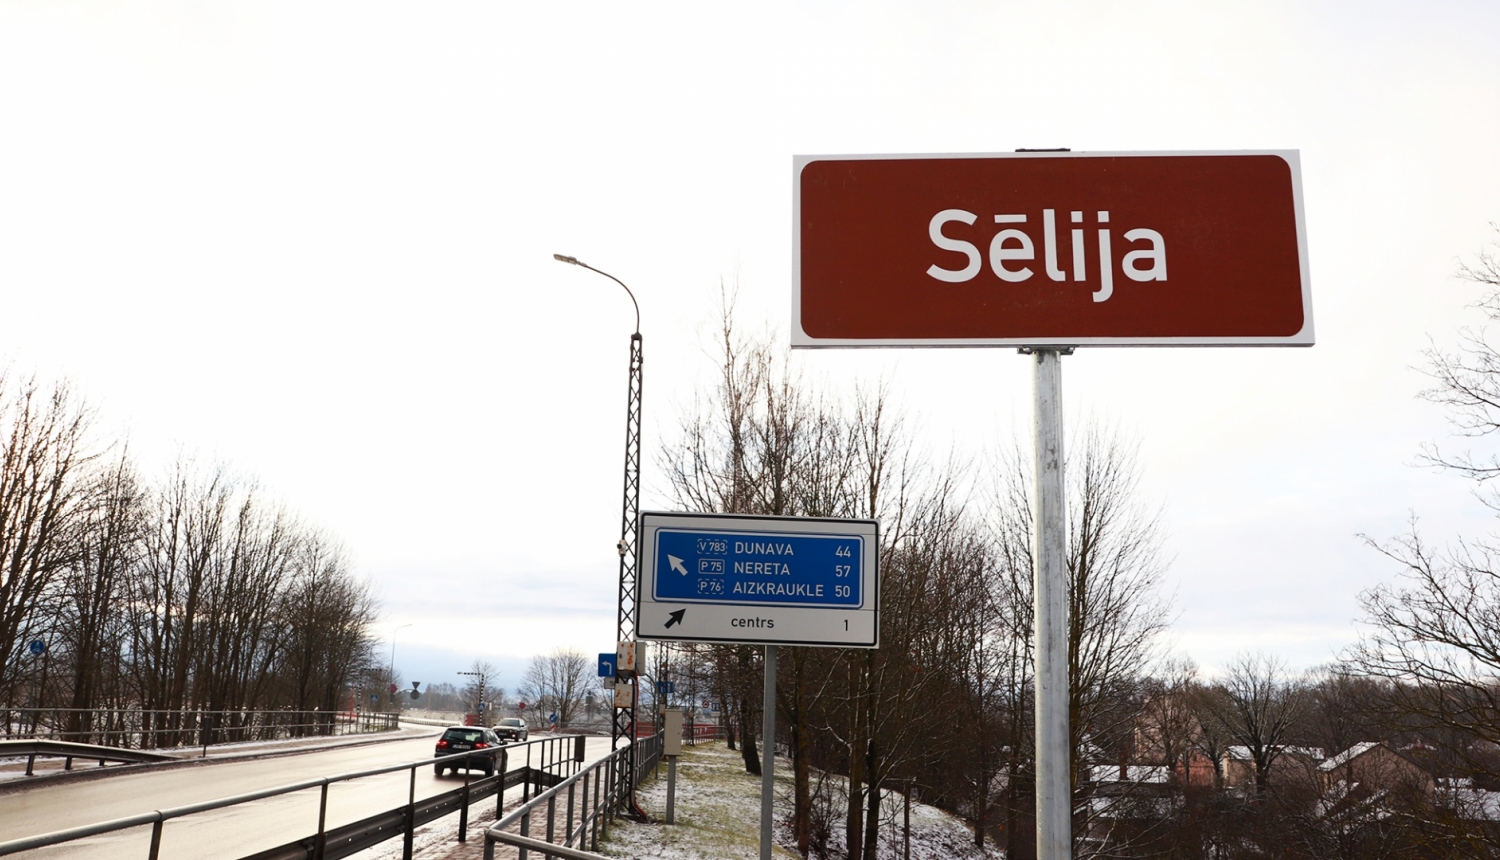 Ceļazīme Jēkabpils tilta malā ar uzrakstu "Sēlija" uz tumši brūna fona plāksnītes